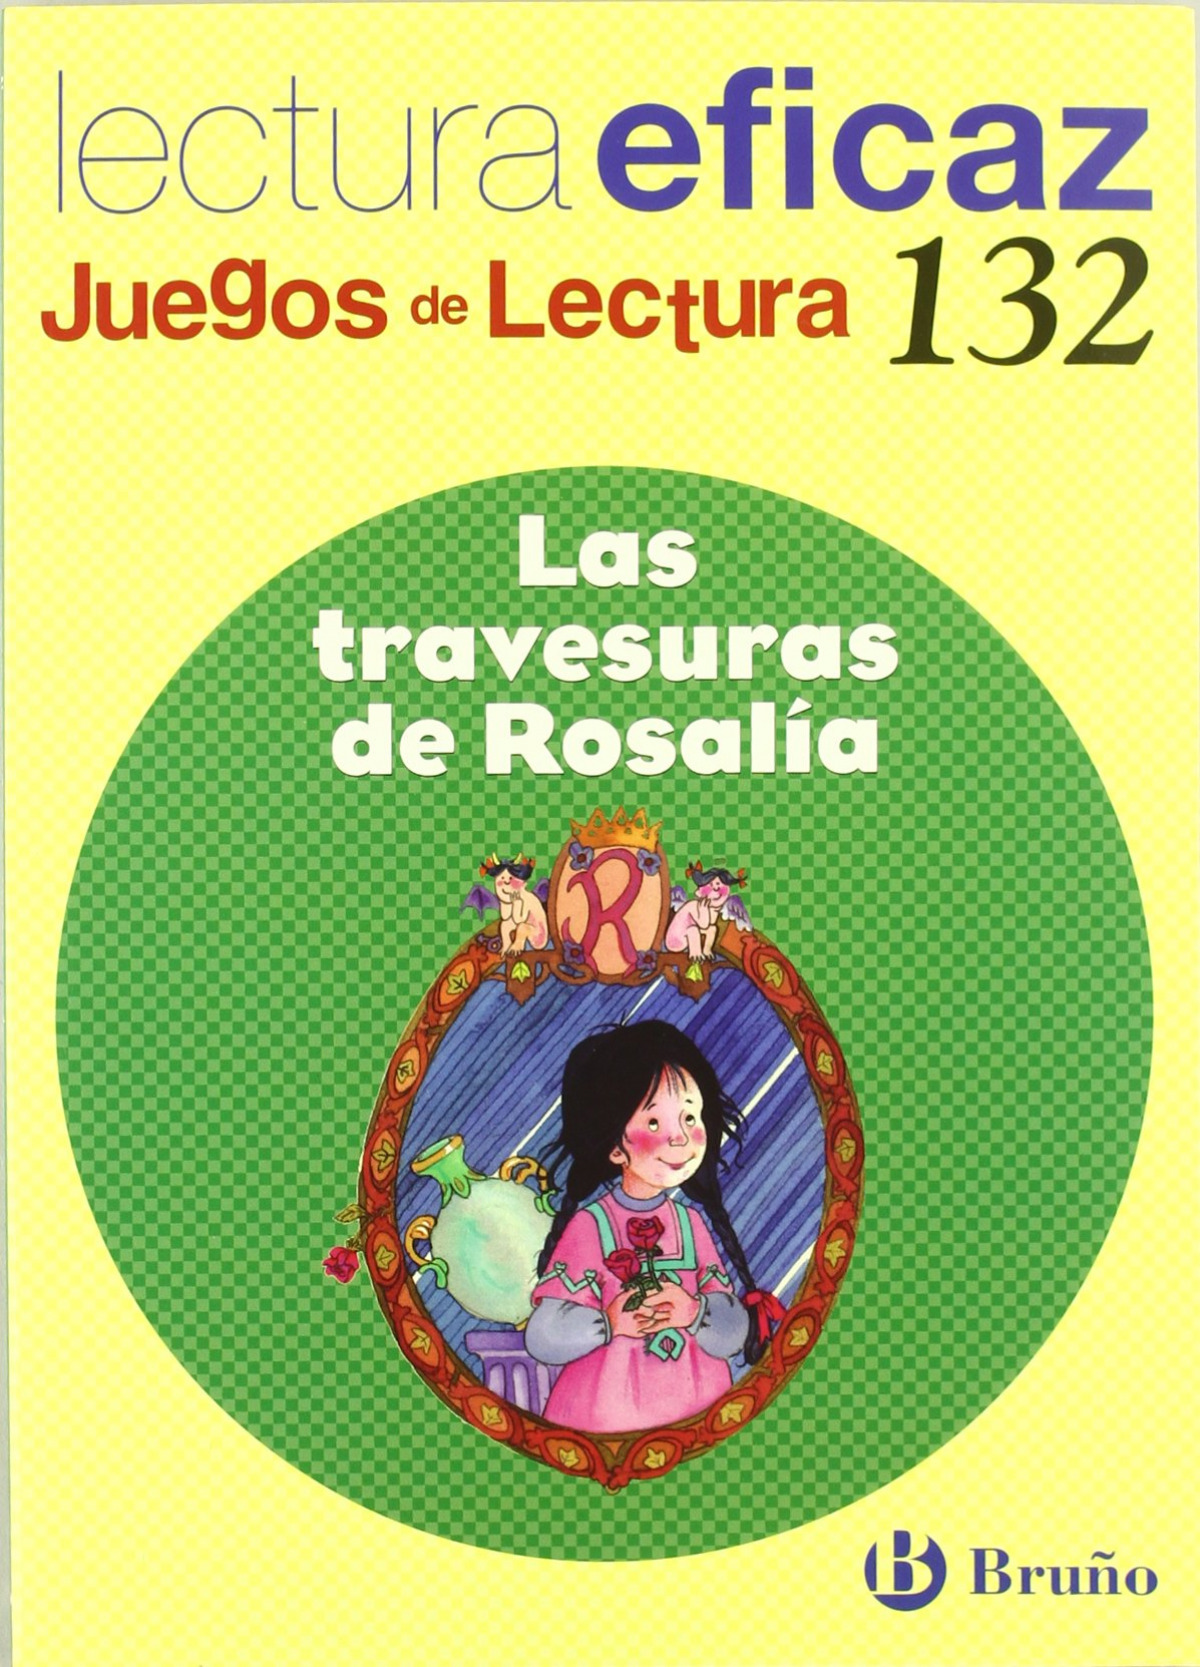 Travesuras de rosalia.(juego de lectura) - Alonso Gracia, Ángel/Álvarez de Eulate Alberdi, Carlos Miguel